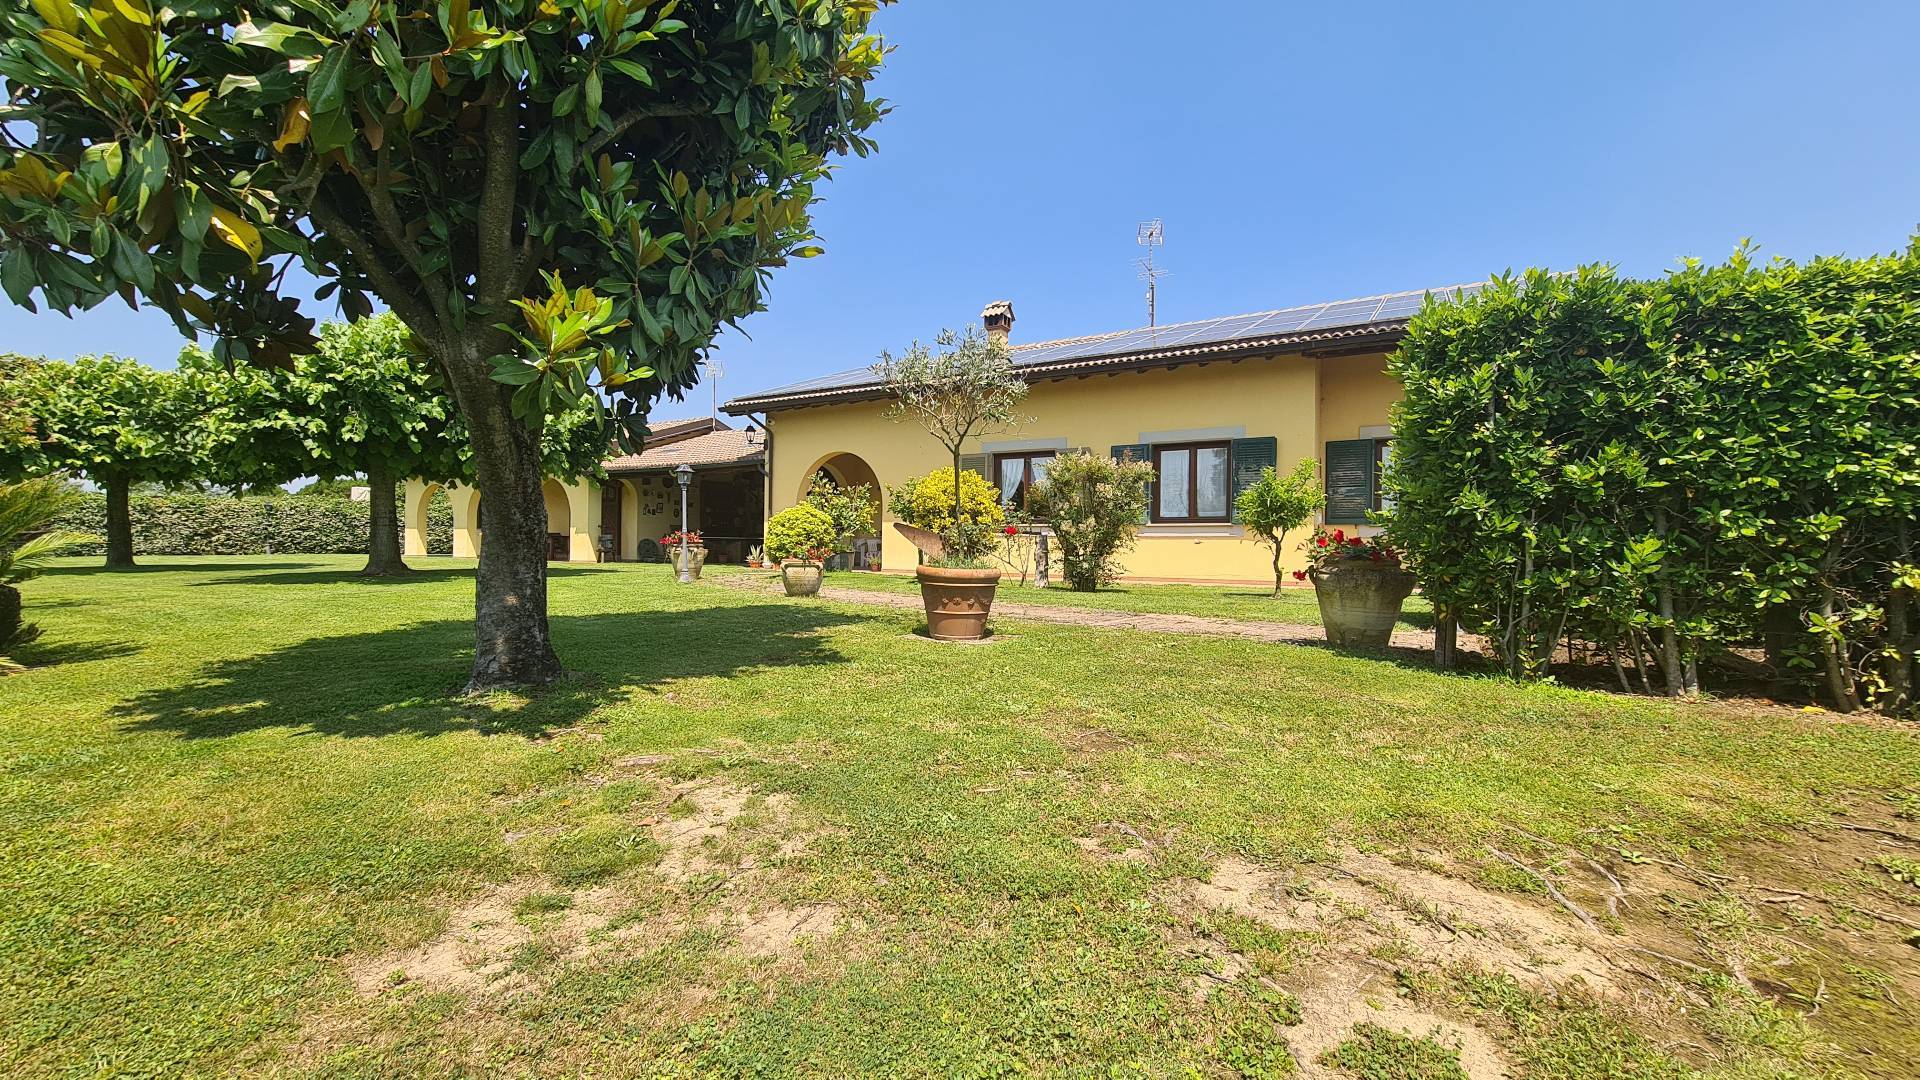 Villa in vendita a Formello, 5 locali, zona Località: SEMICENTRALE, prezzo € 570.000 | CambioCasa.it